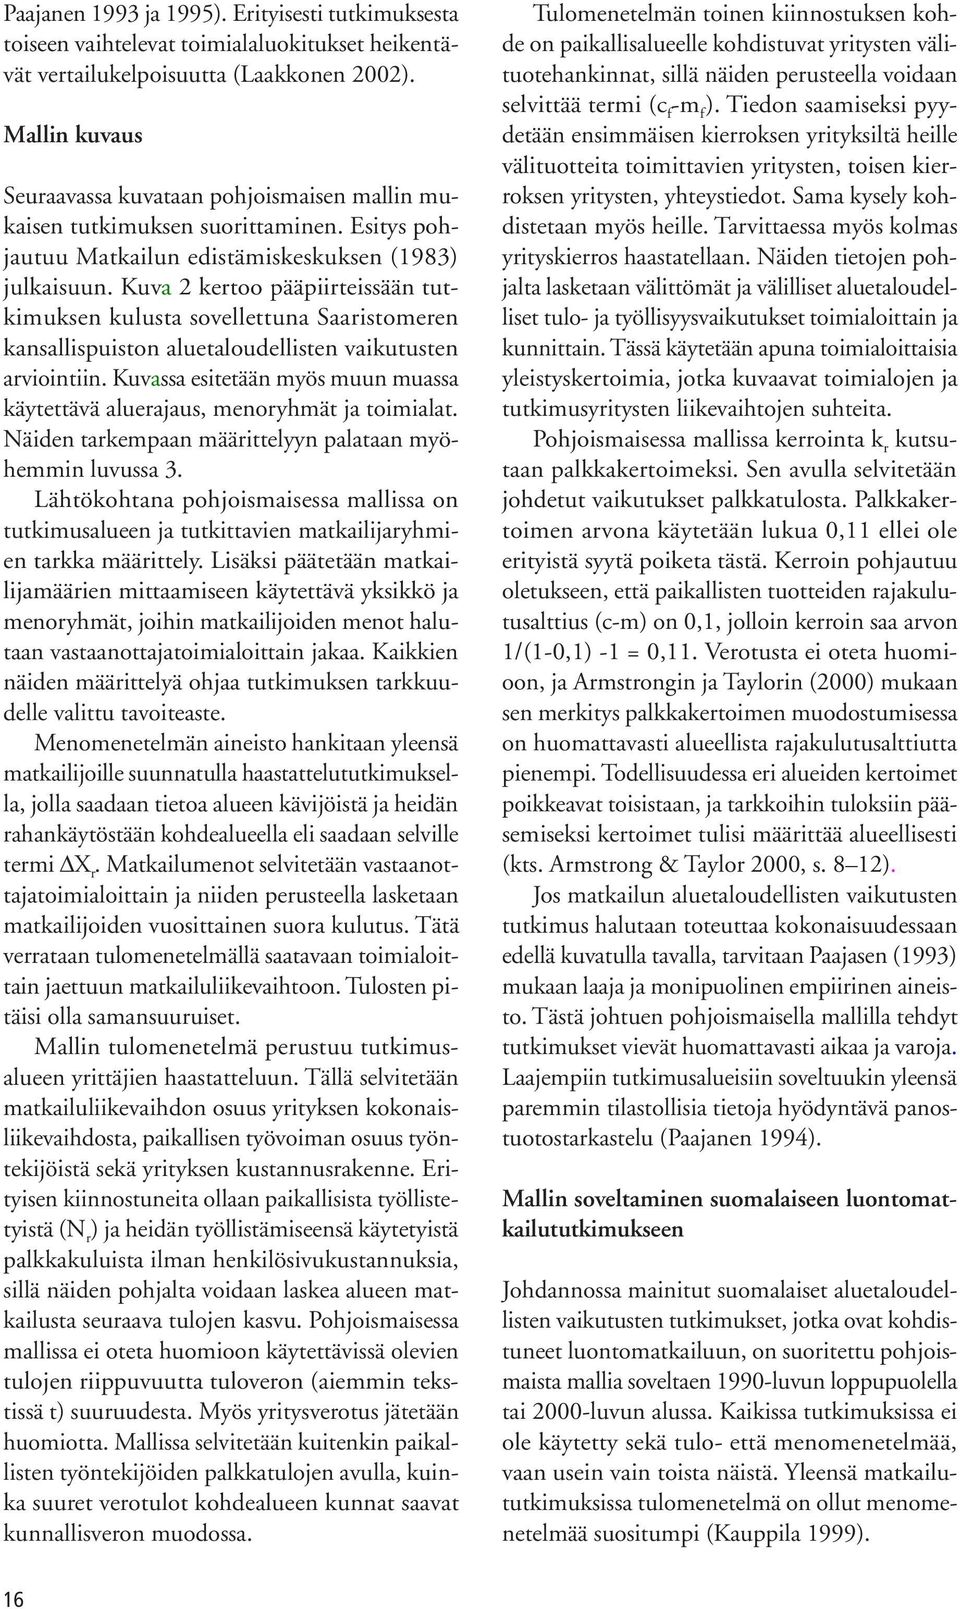 Kuva 2 kertoo pääpiirteissään tutkimuksen kulusta sovellettuna Saaristomeren kansallispuiston aluetaloudellisten vaikutusten arviointiin.